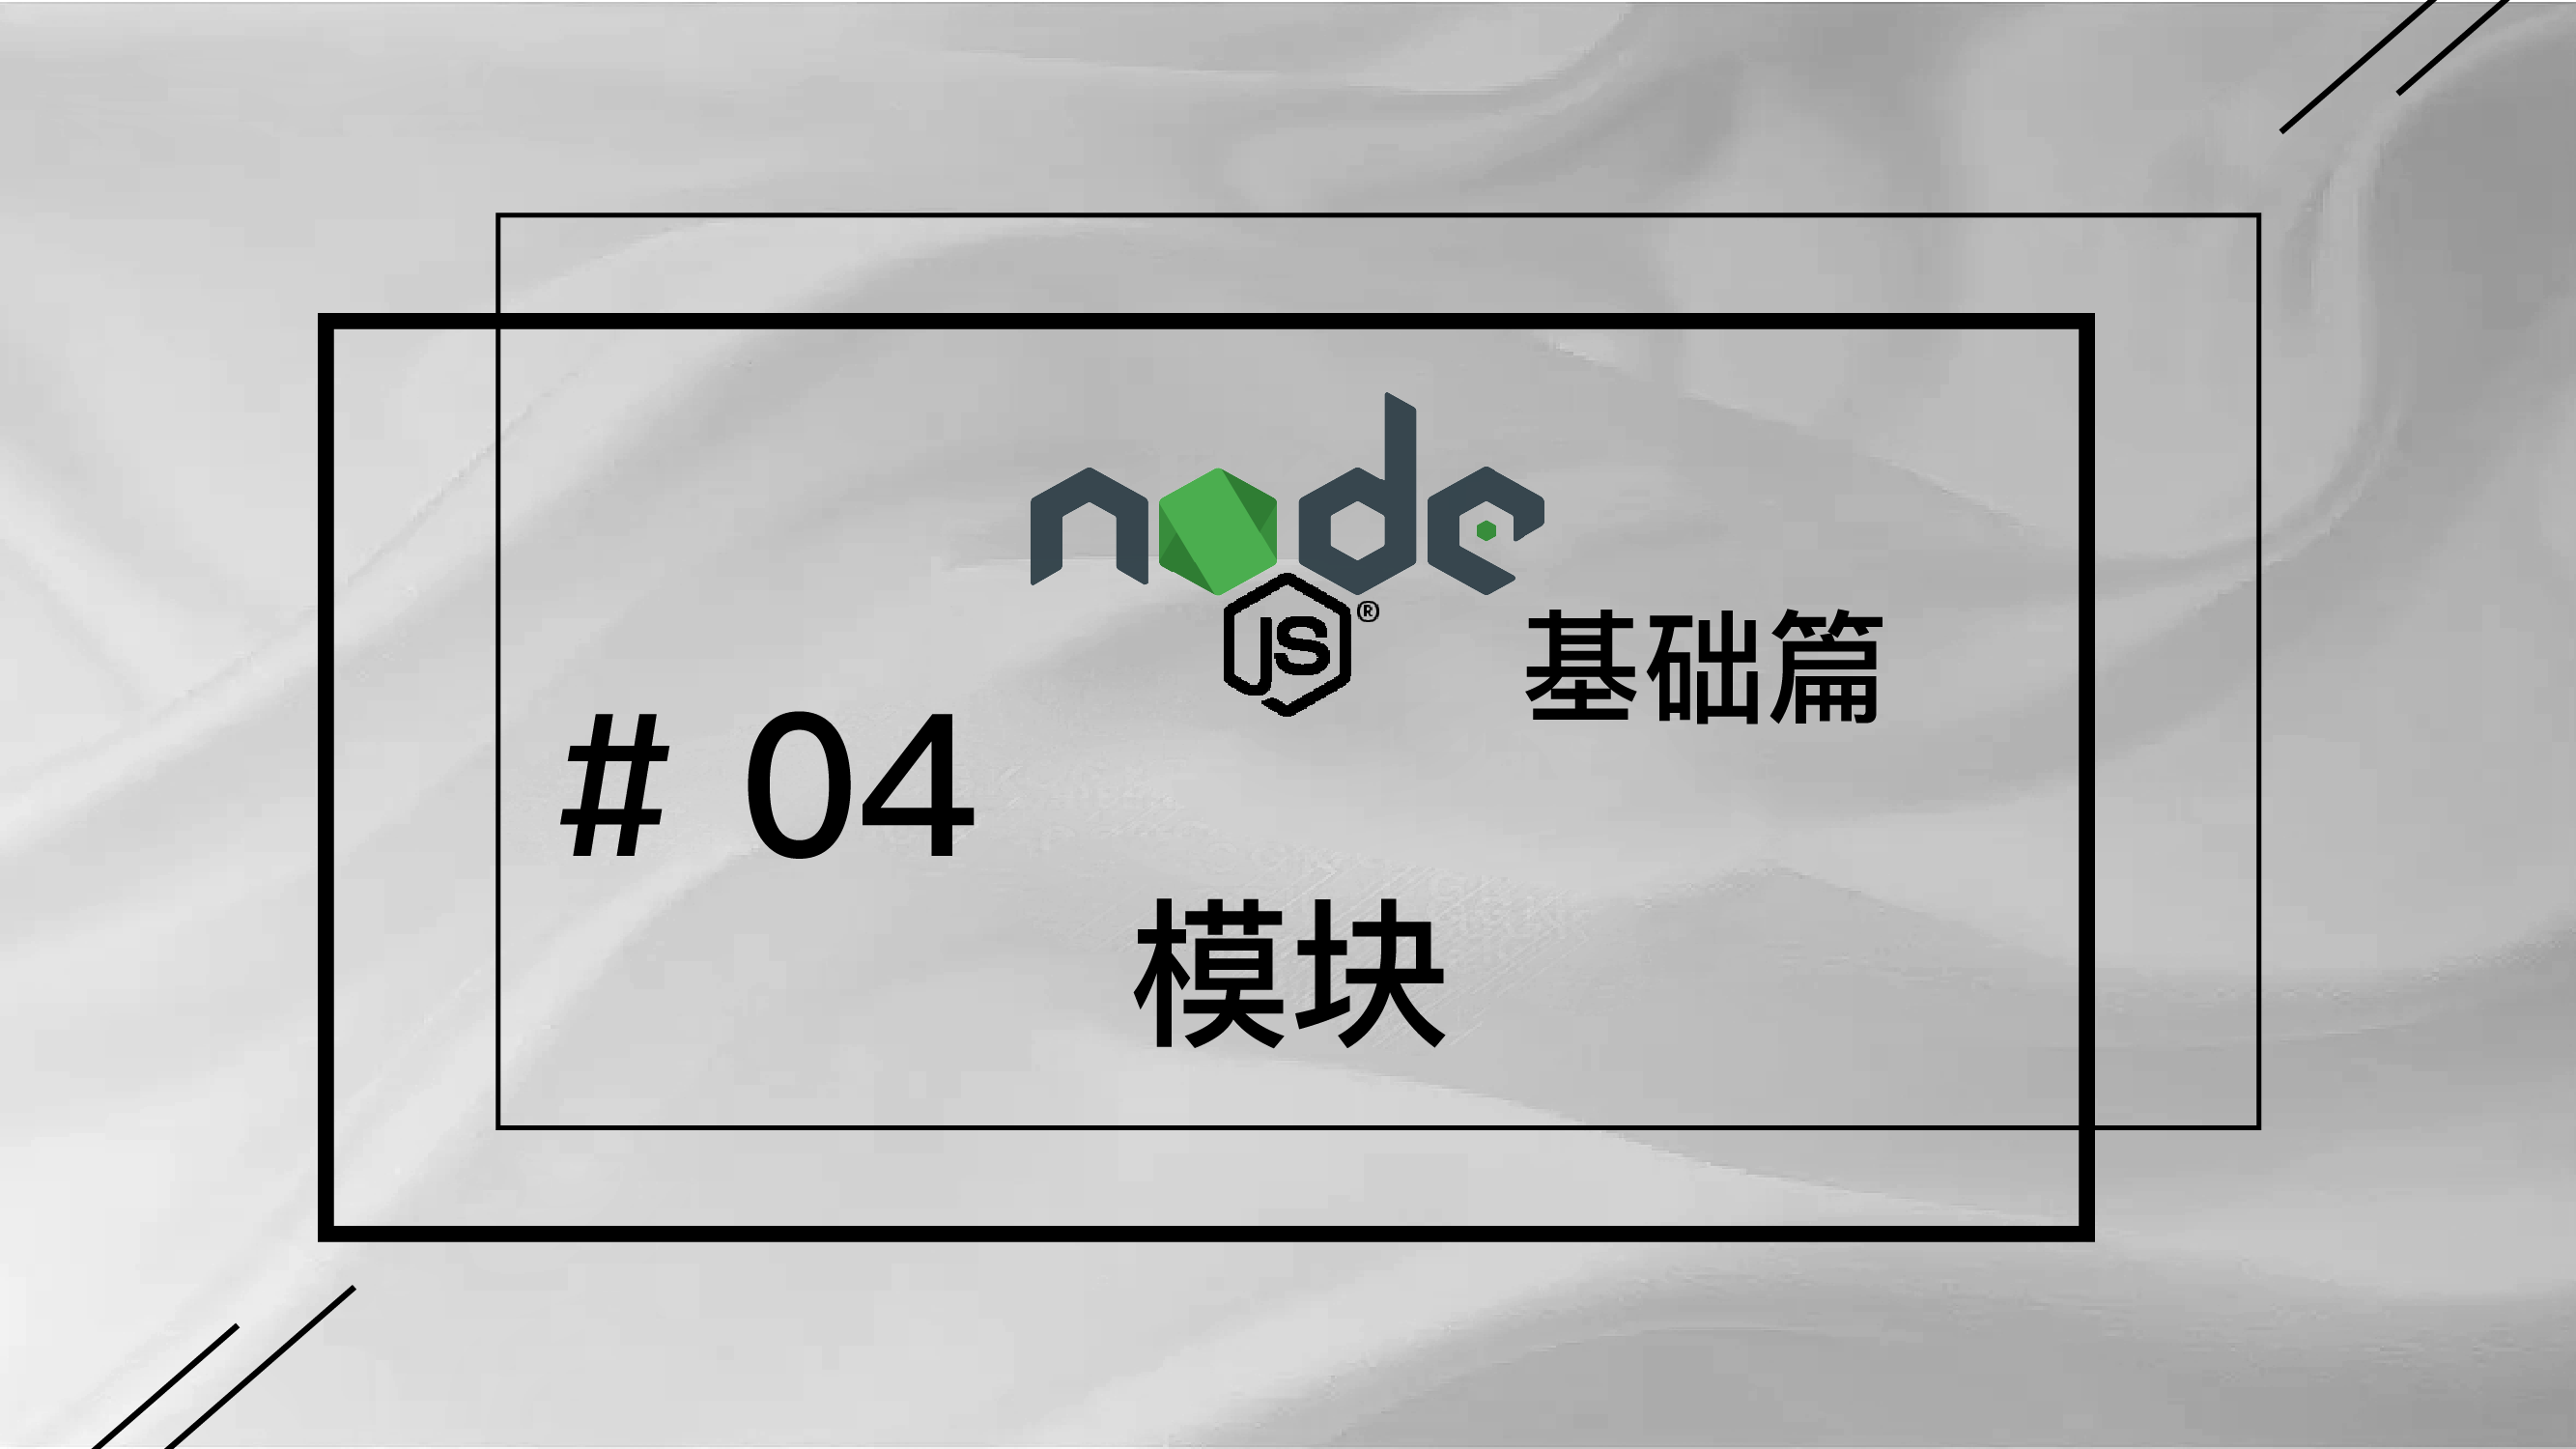 轻松学 Node.js - 基础篇免费视频教程 #4 模块